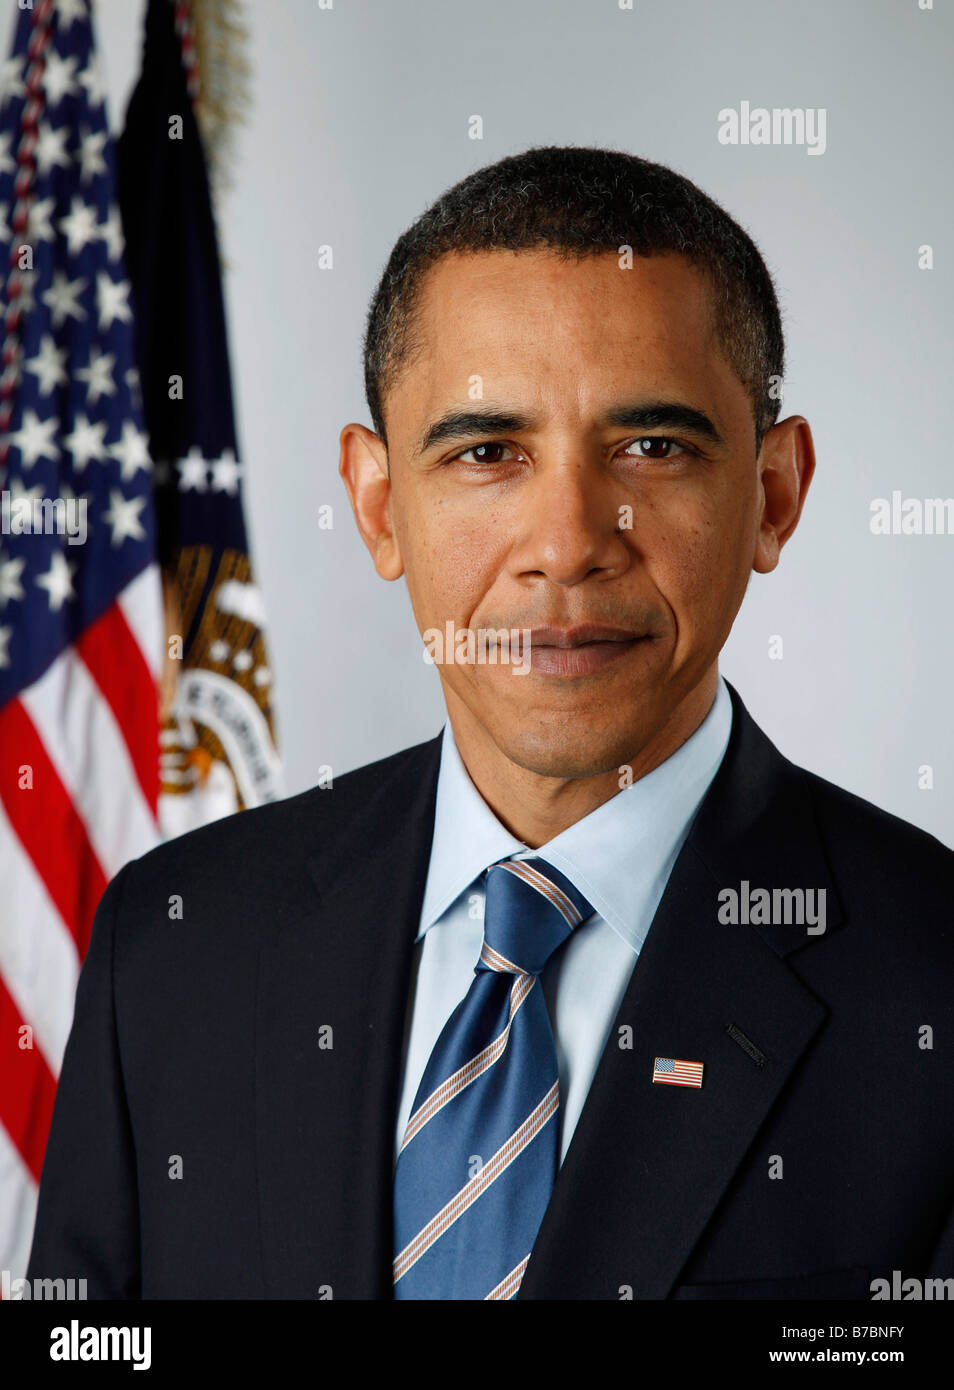 Offizielles Porträt von Präsident Barack Obama am 13. Januar 2009 Stockfoto